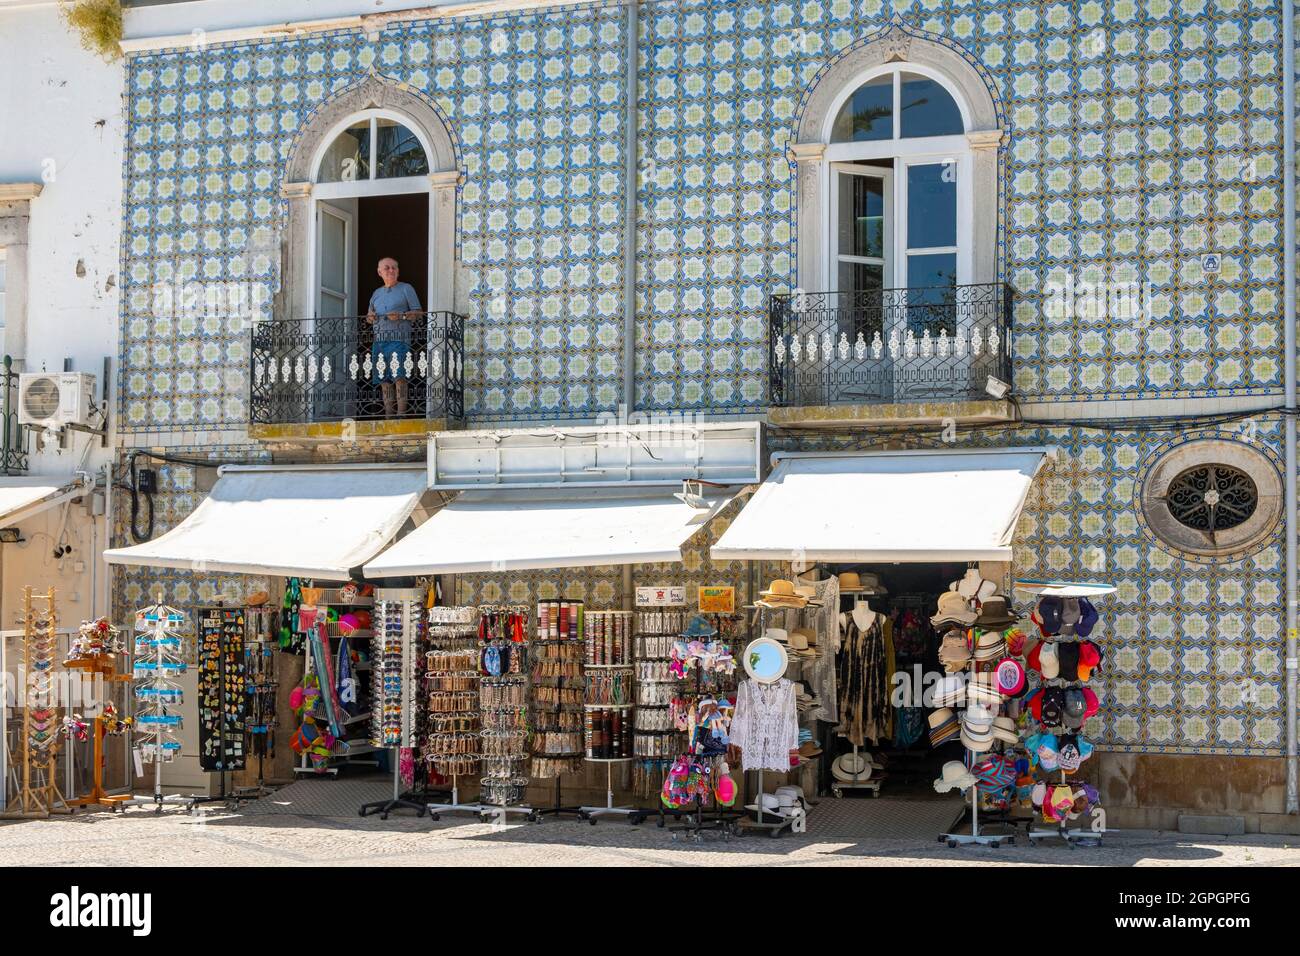 Portugal, Algarve, Tavira, the old town Stock Photo